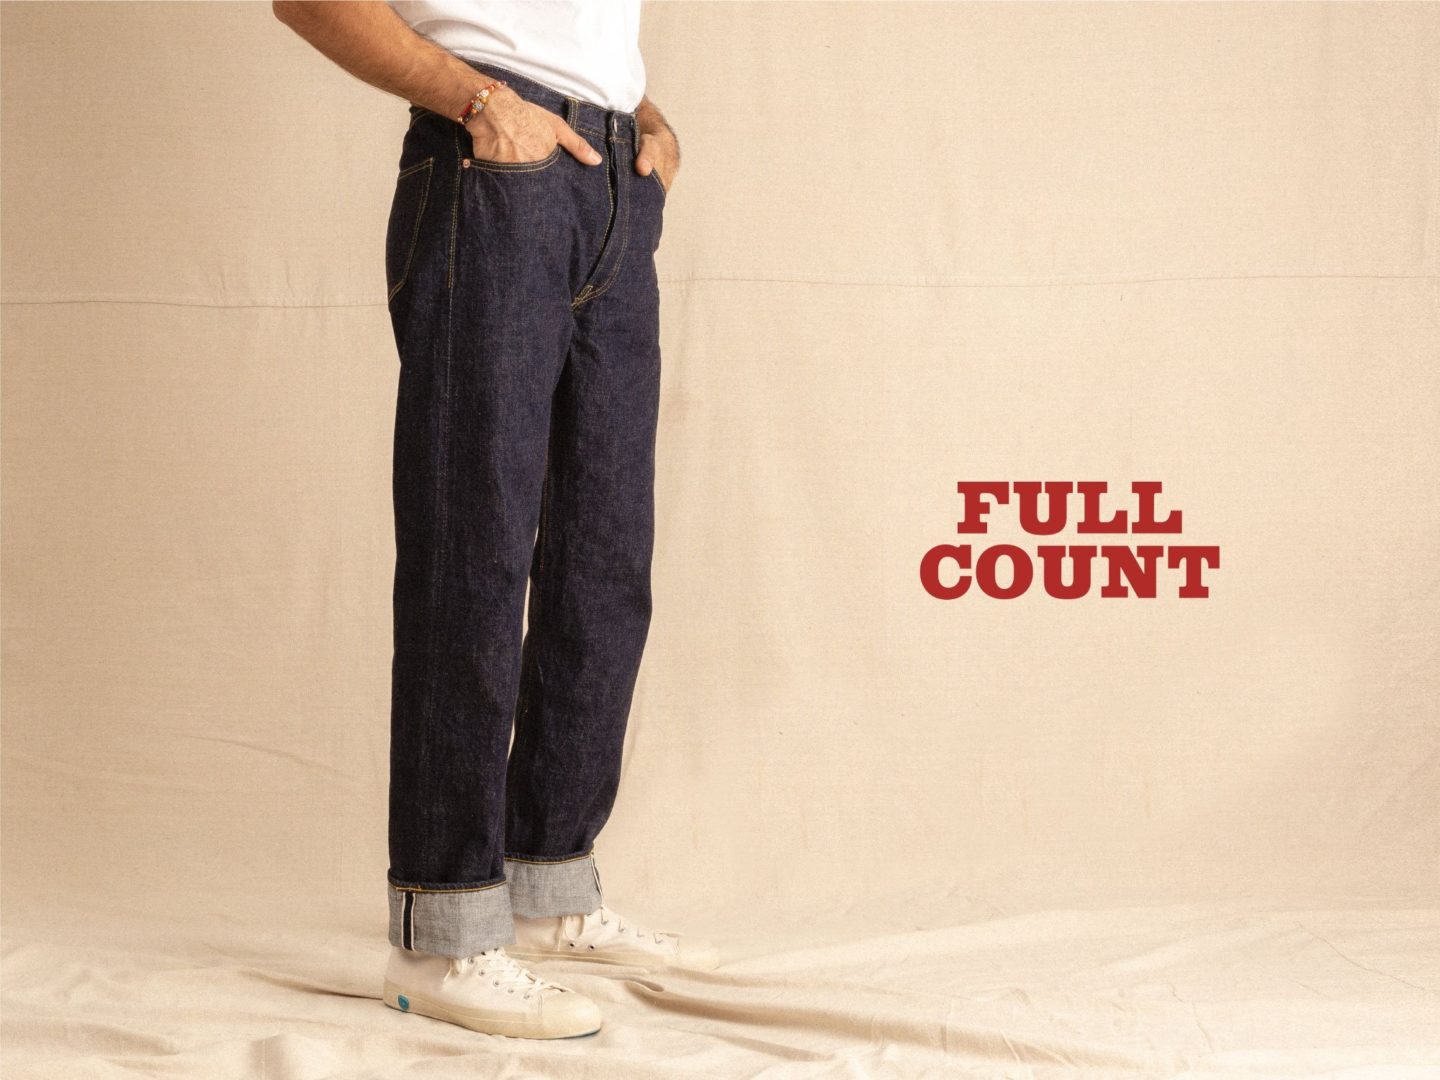 fullcount jeans levi's 501